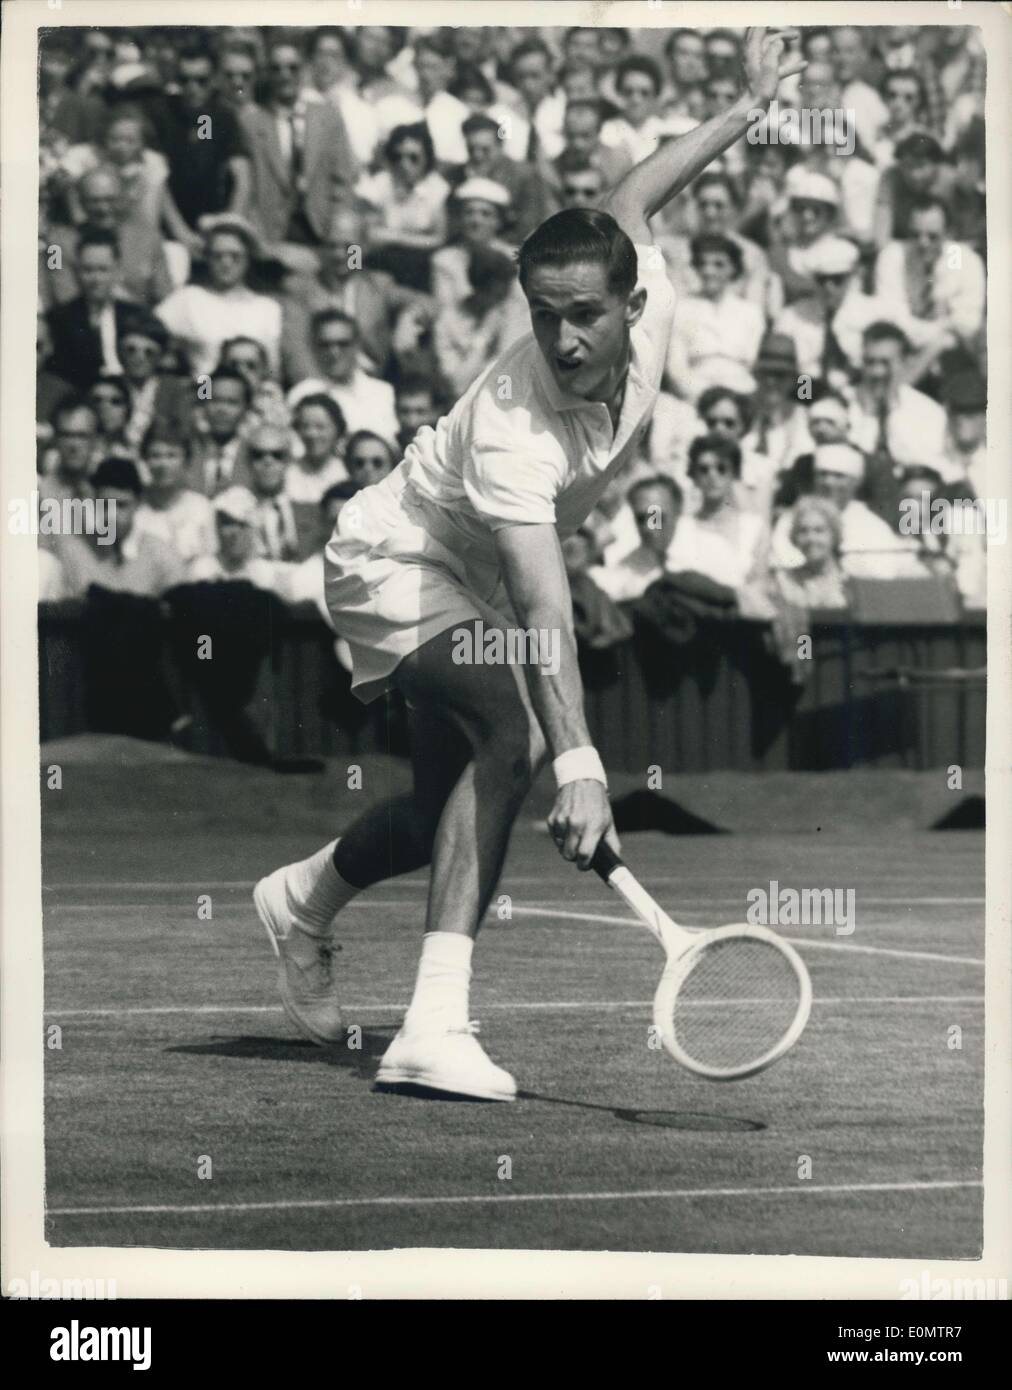 Juin 30, 1956 - Championnats de tennis de Wimbledon. M.J. Anderson contre N. Pietrangeli. Photo montre M. J. Anderson Australis , dans Banque D'Images